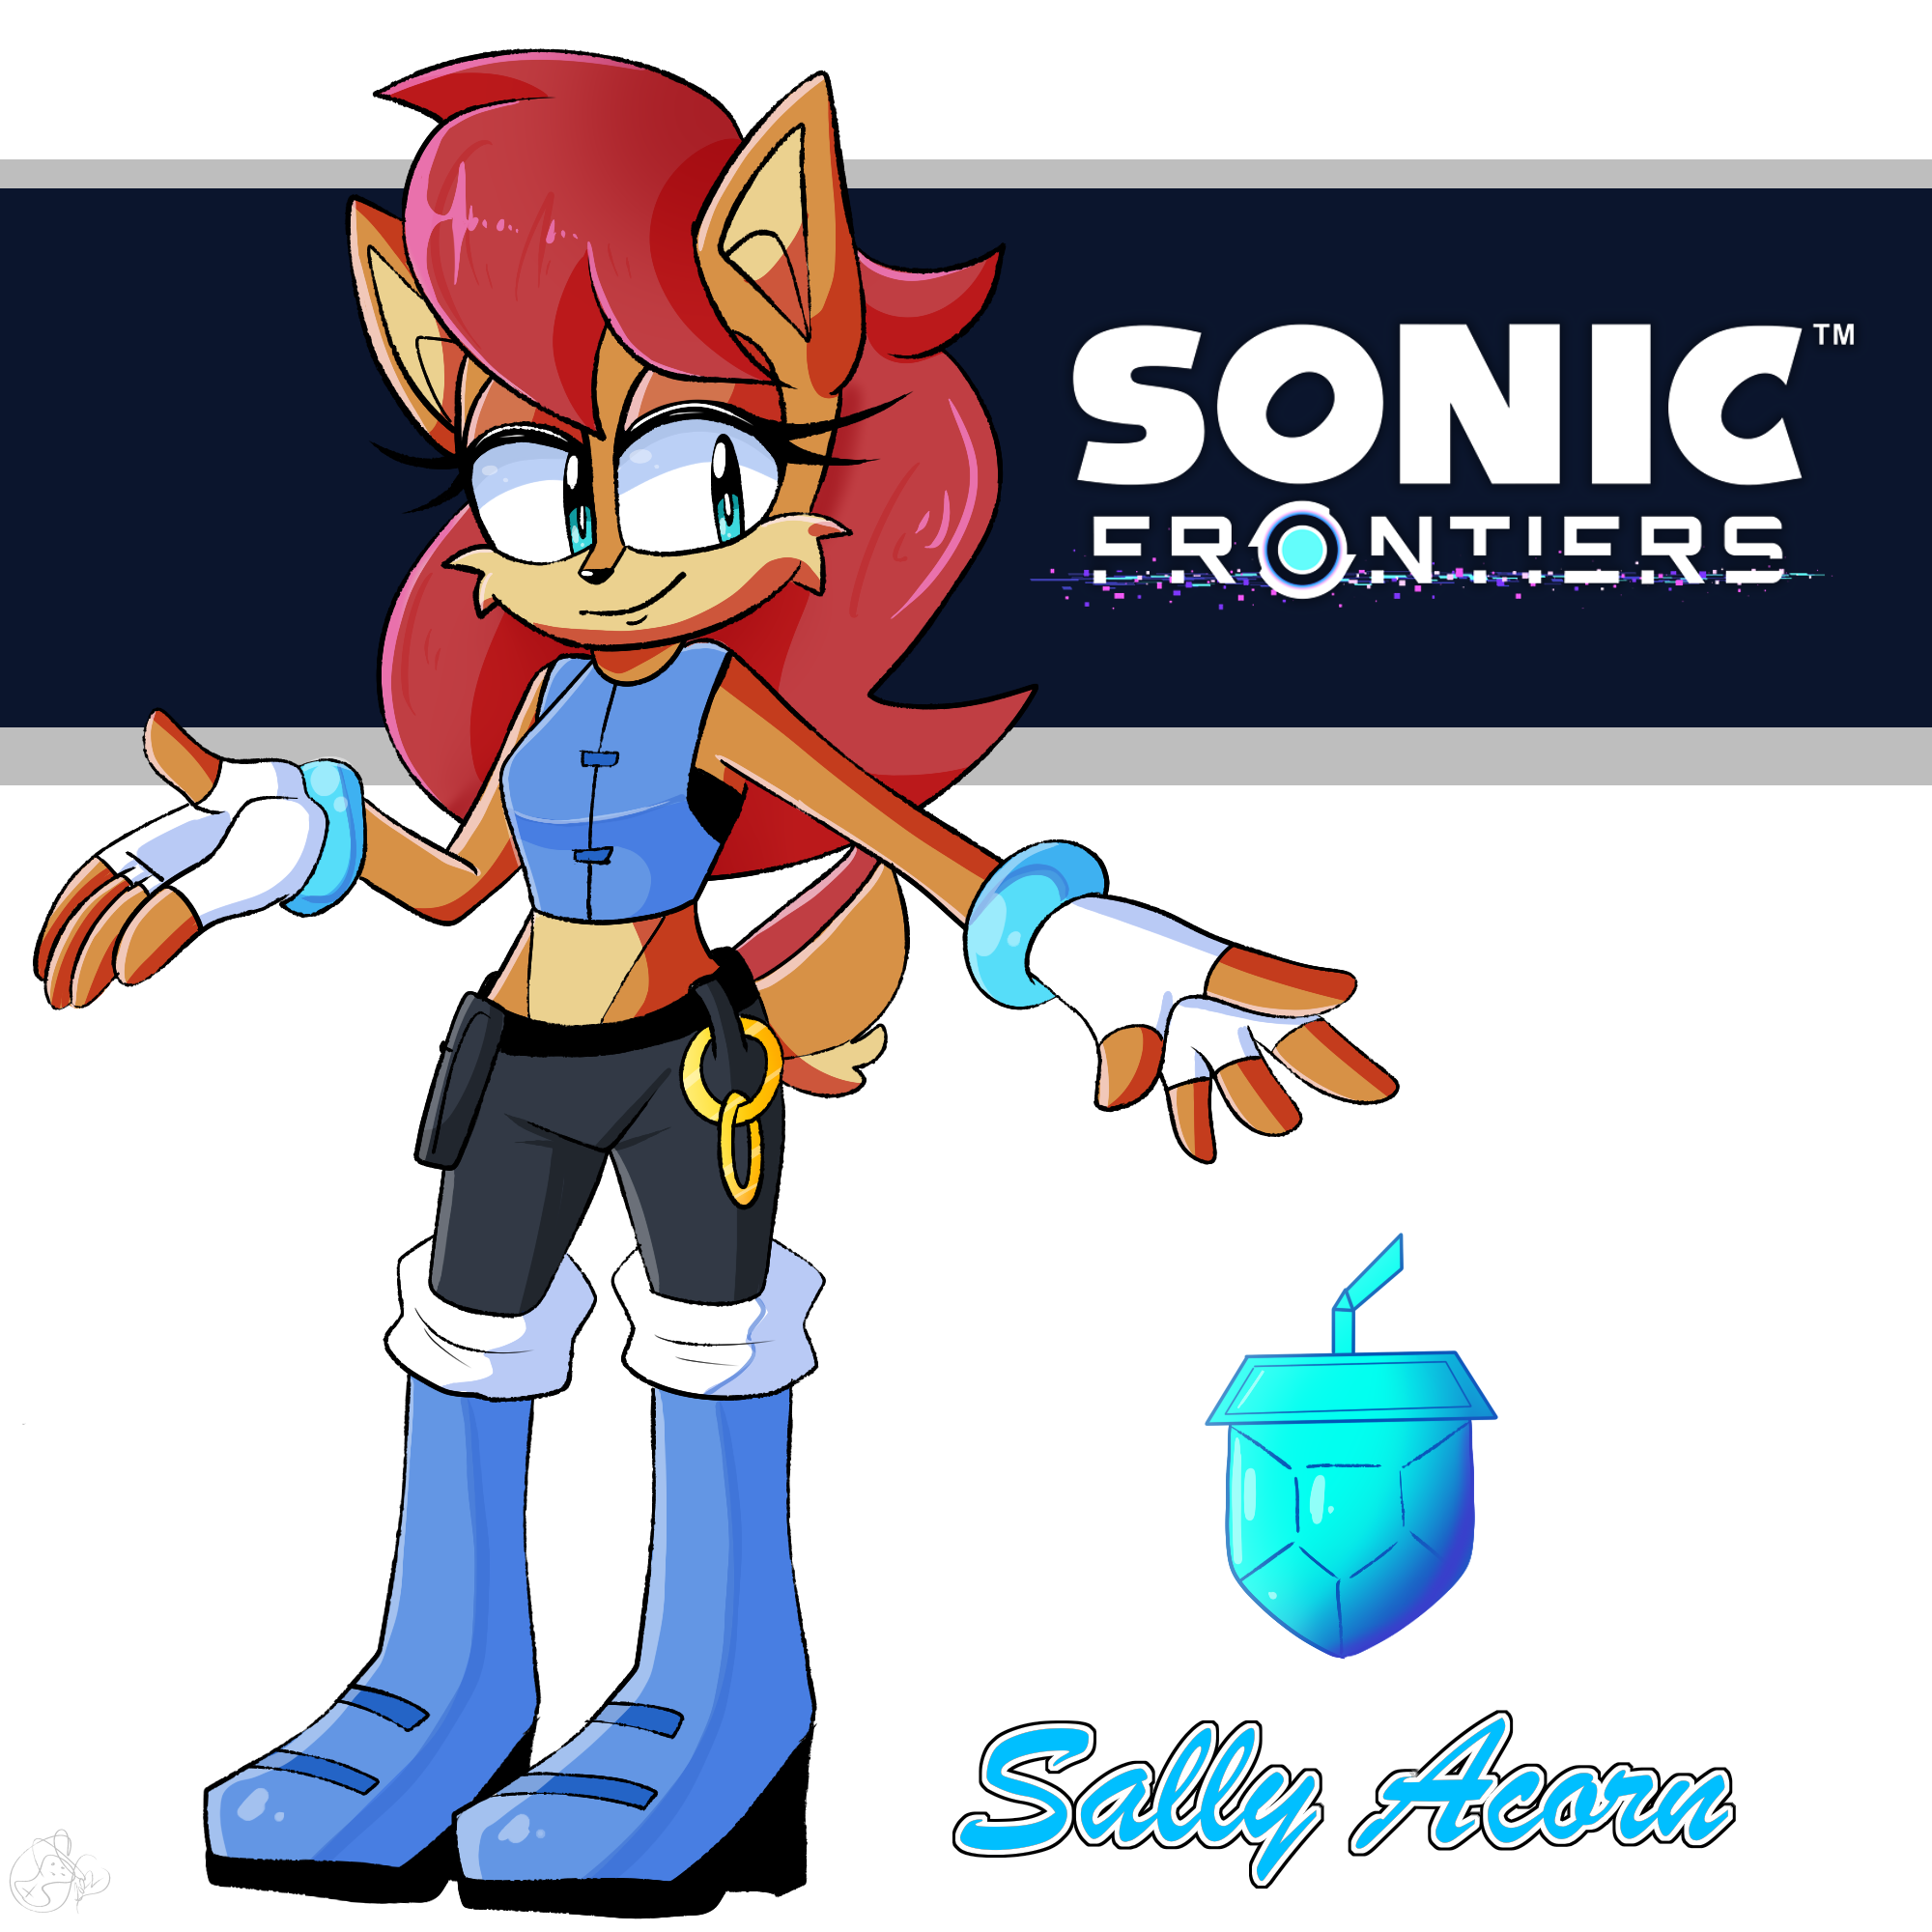 Sonic Frontiers Sally Acorn Mod? by brandonallen1213 on DeviantArt